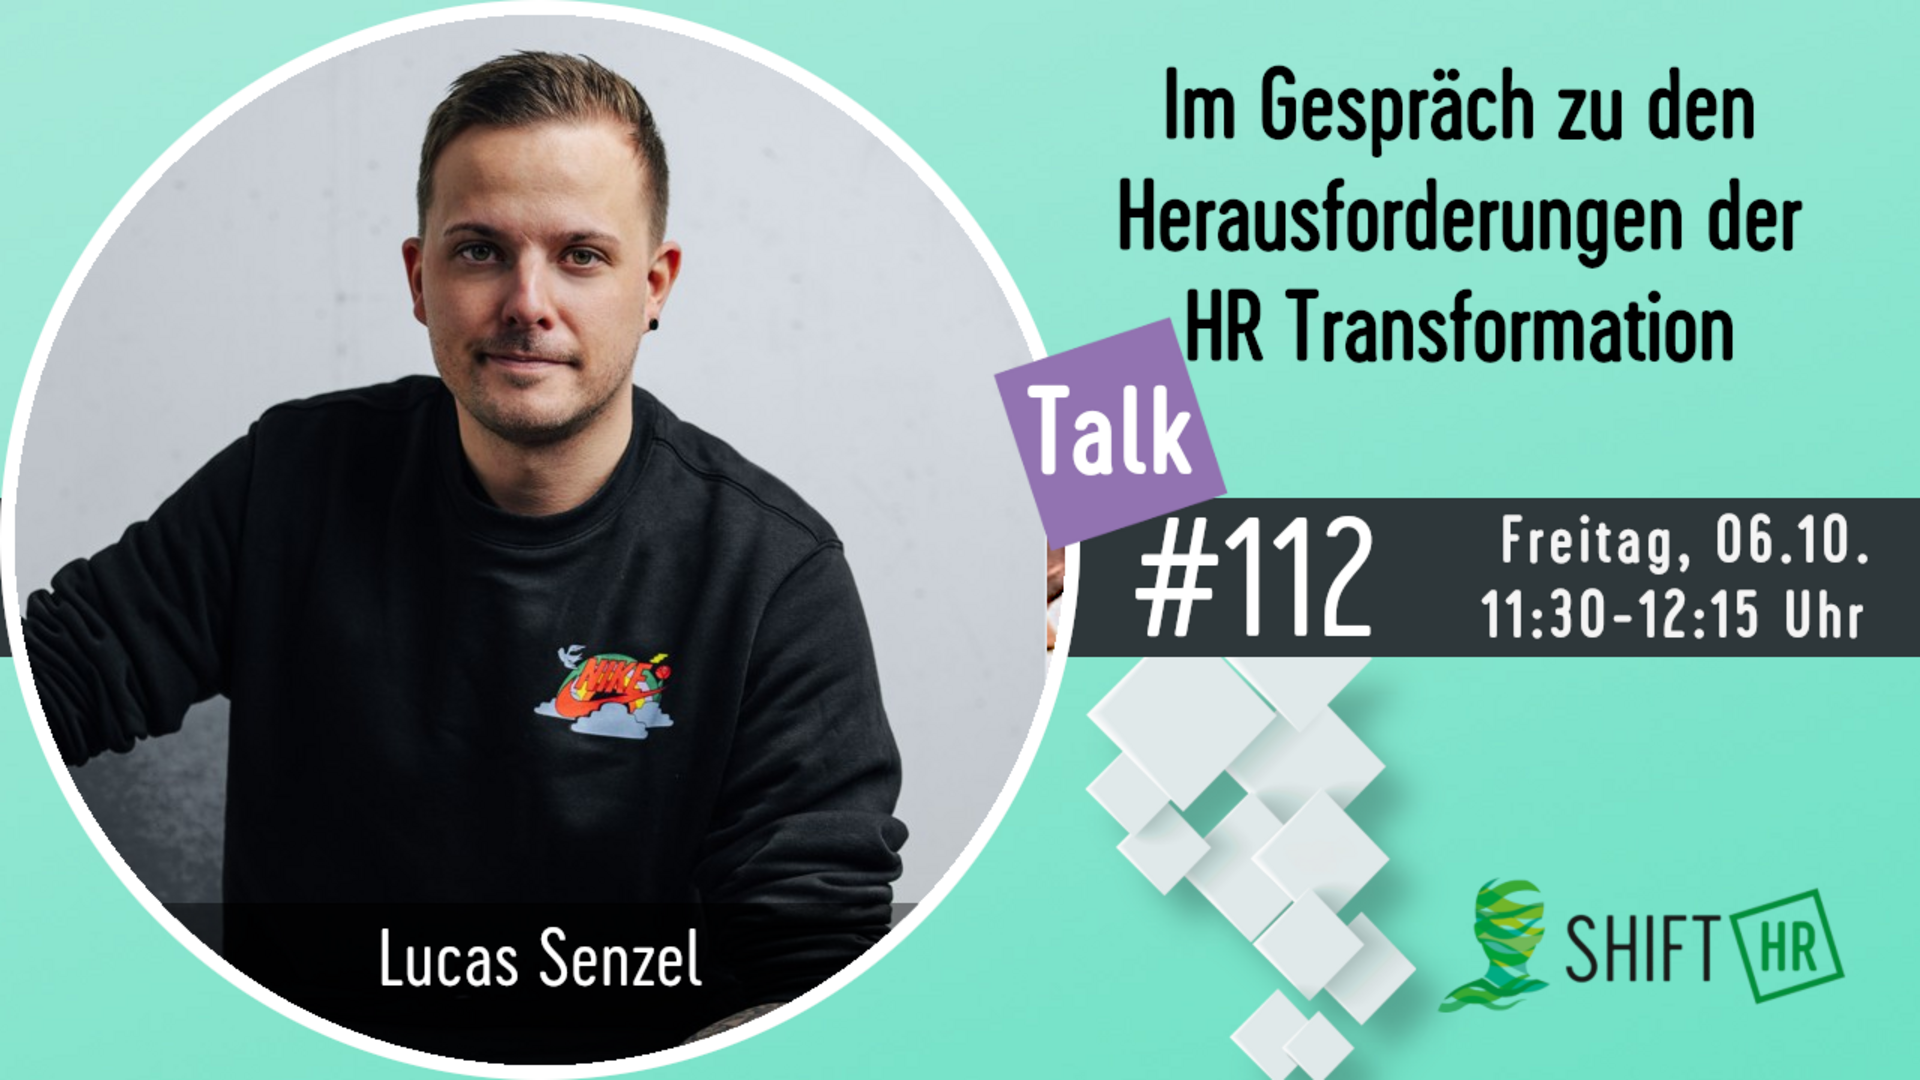 Im Gespräch mit Lucas Senzel zu den Herausforderungen der HR Transformation